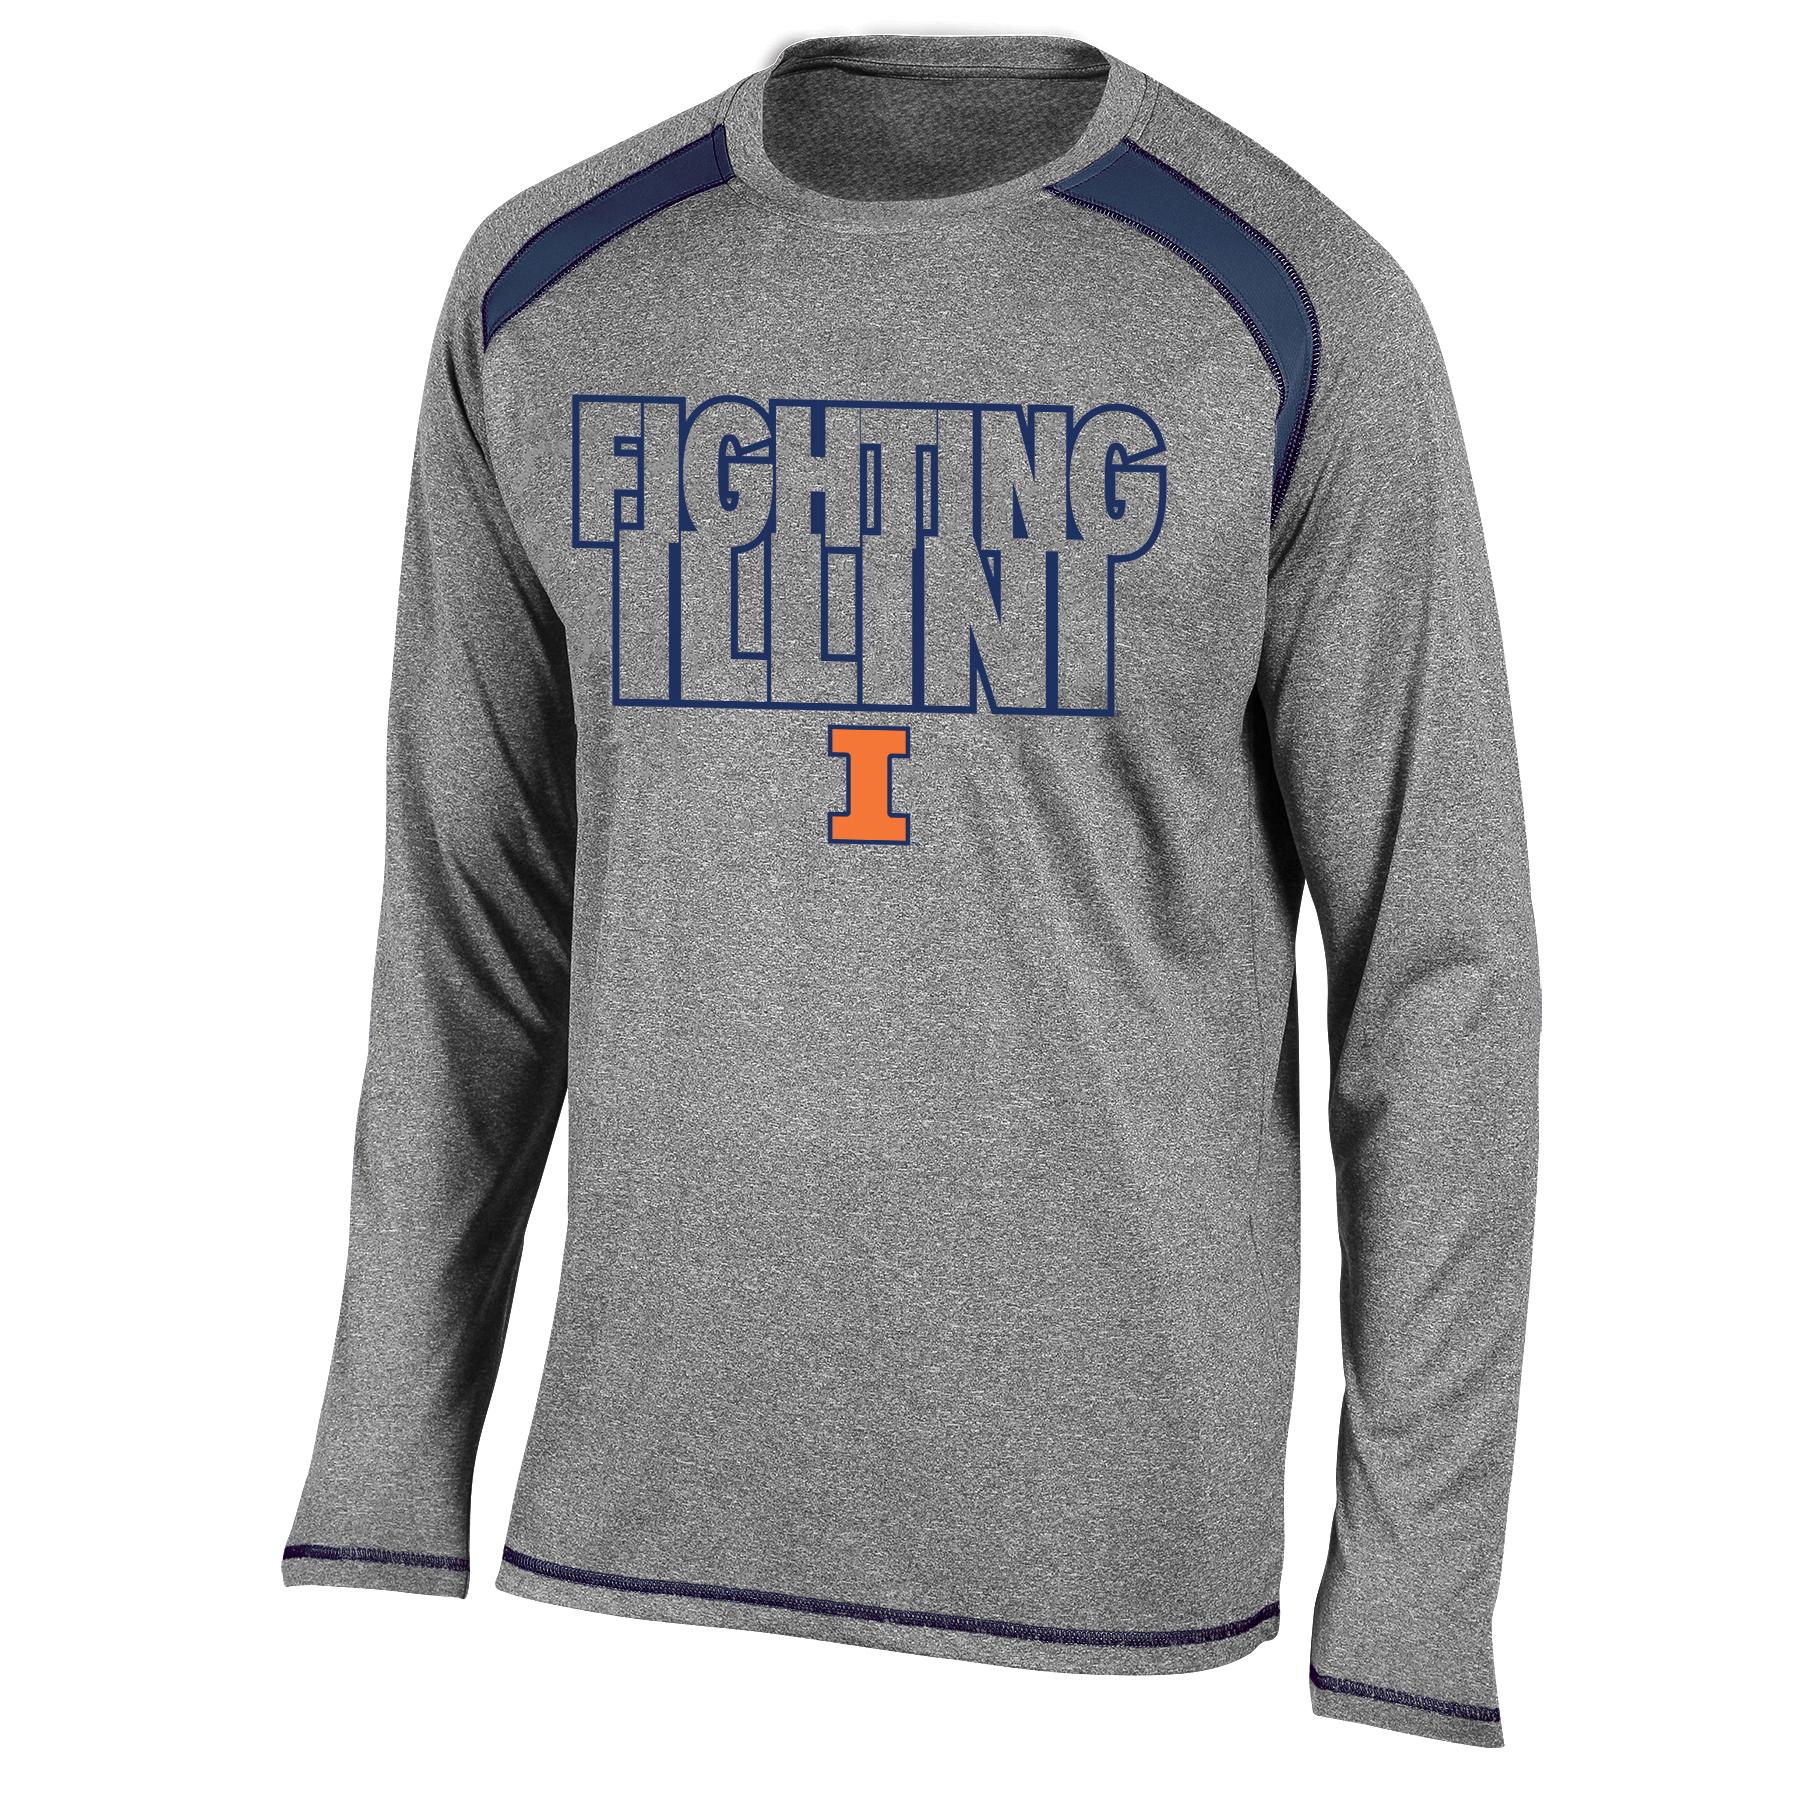 NCAA Men's Athletic Shirt - University of Illinois Fighting Illini